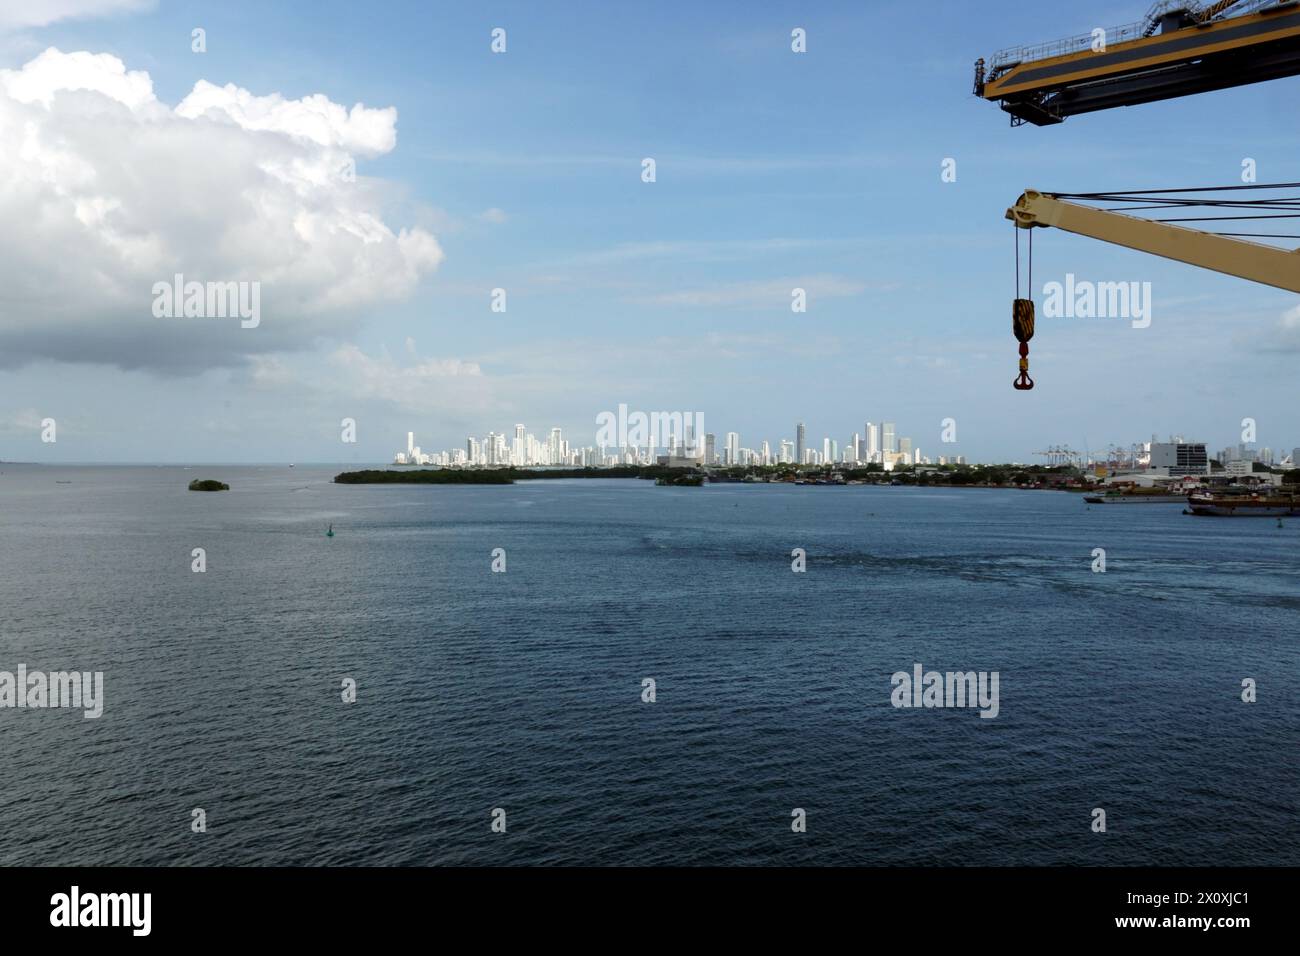 Une silhouette lointaine de Carthagène, Colombie, avec ses bâtiments blancs et hauts modernes vus du terminal à conteneurs dans le port maritime avec des grues. Banque D'Images